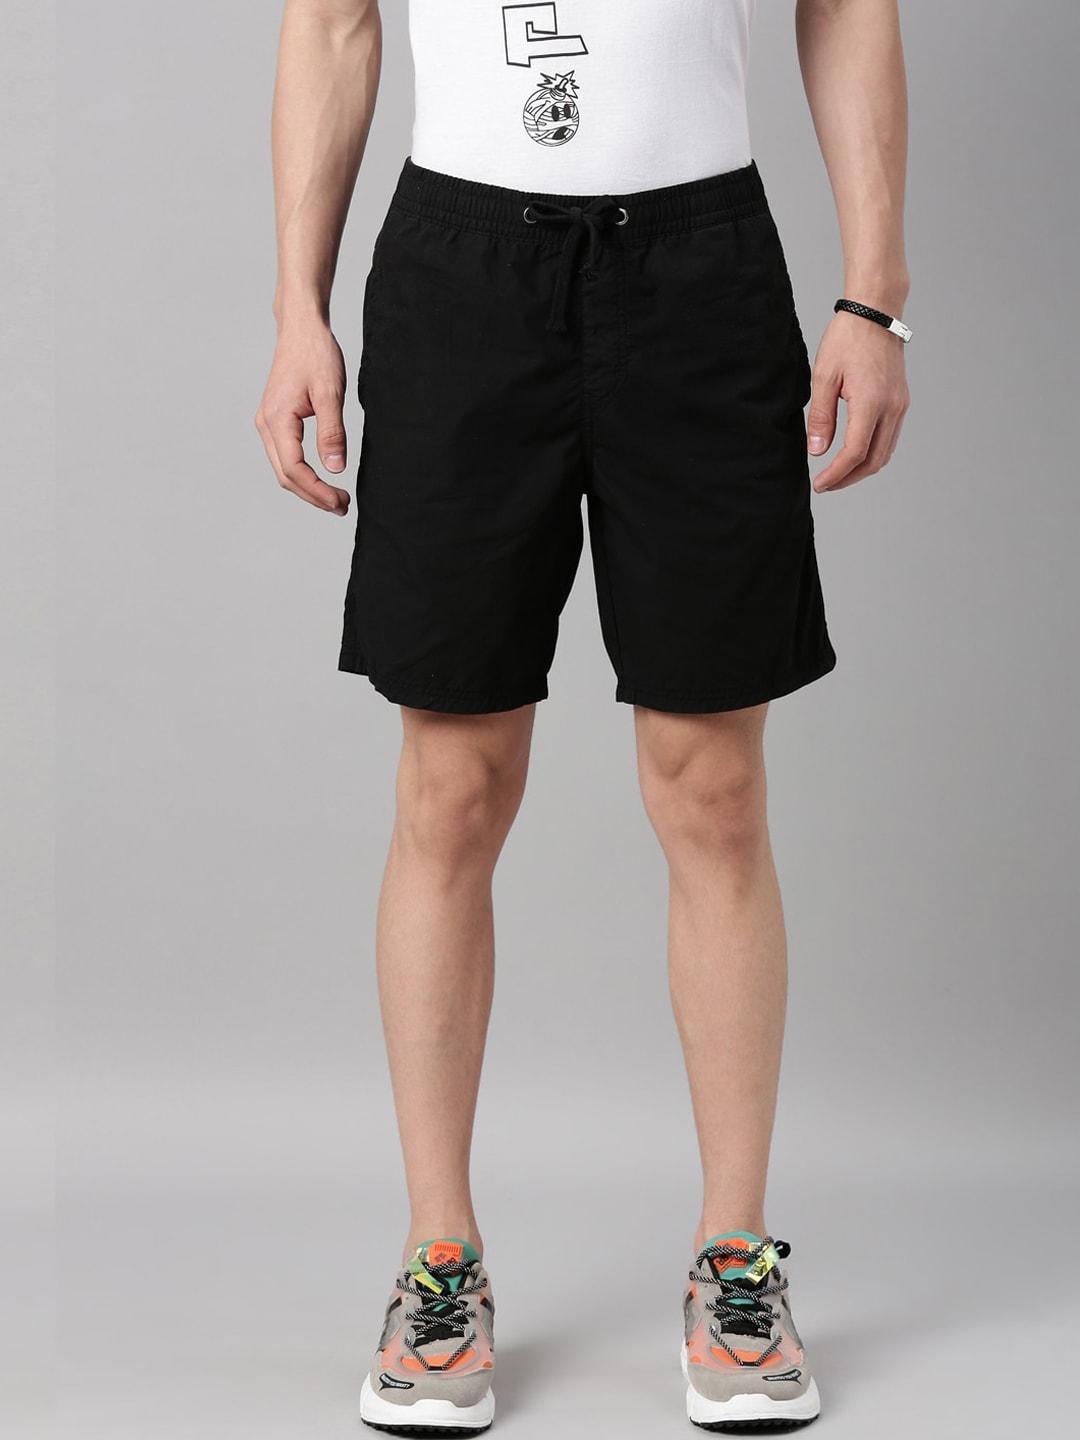 breakbounce-men-black-slim-fit-low-rise-pure-cotton-sports-shorts